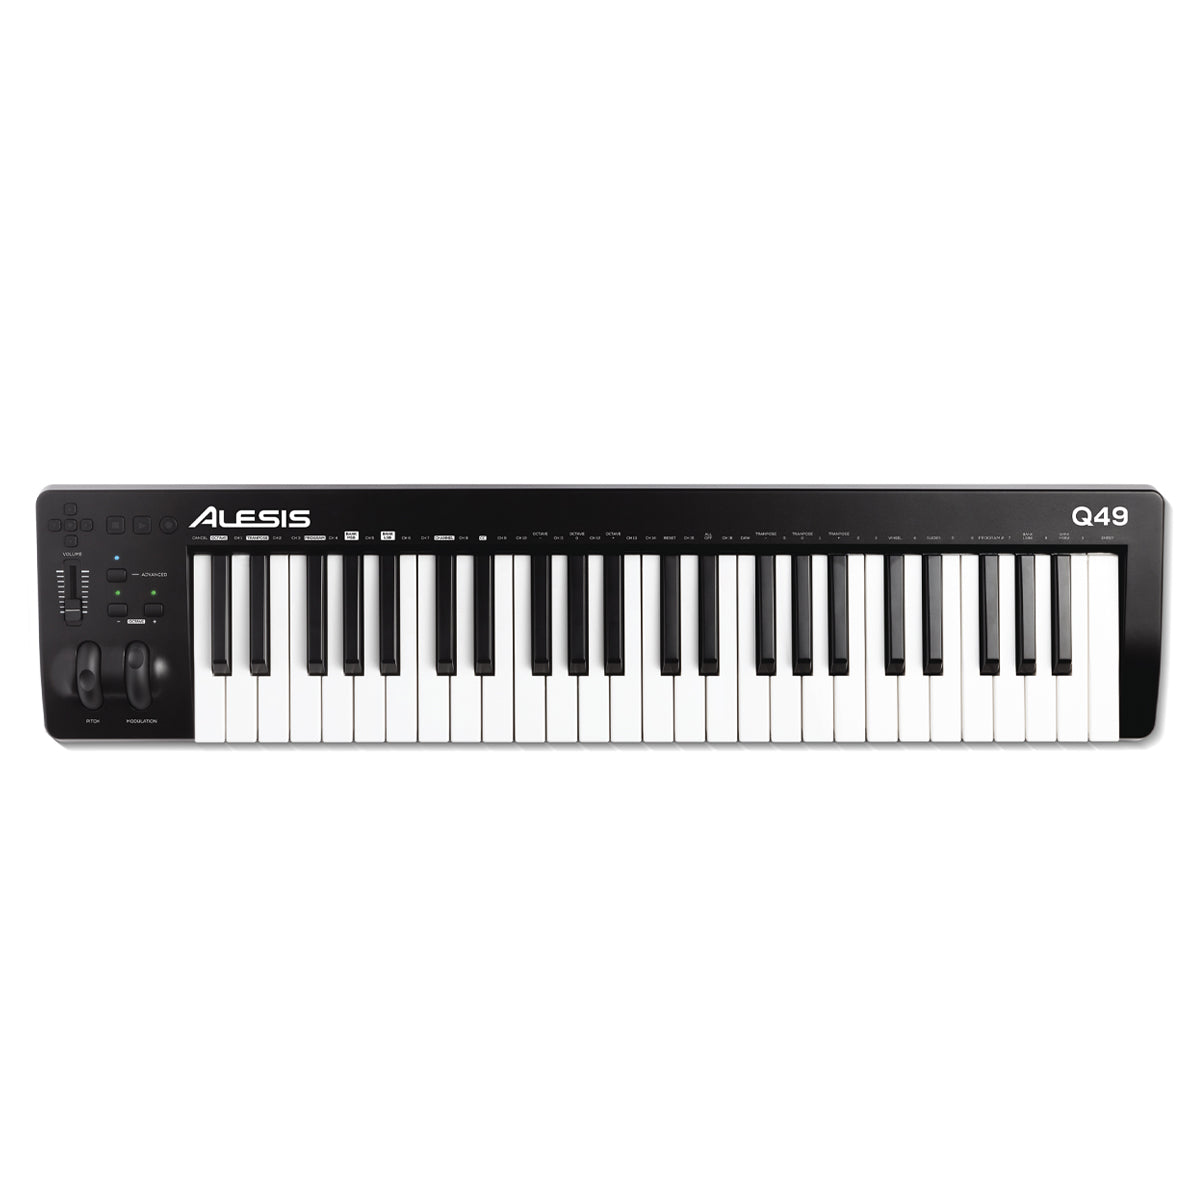 MIDI Keyboard Controller Alesis Q49 MKII